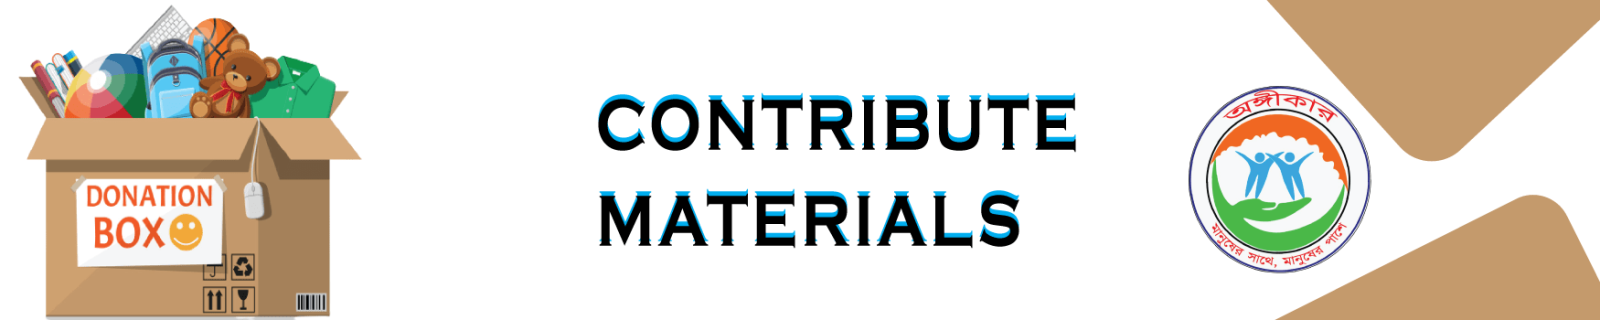 Contribute-materials